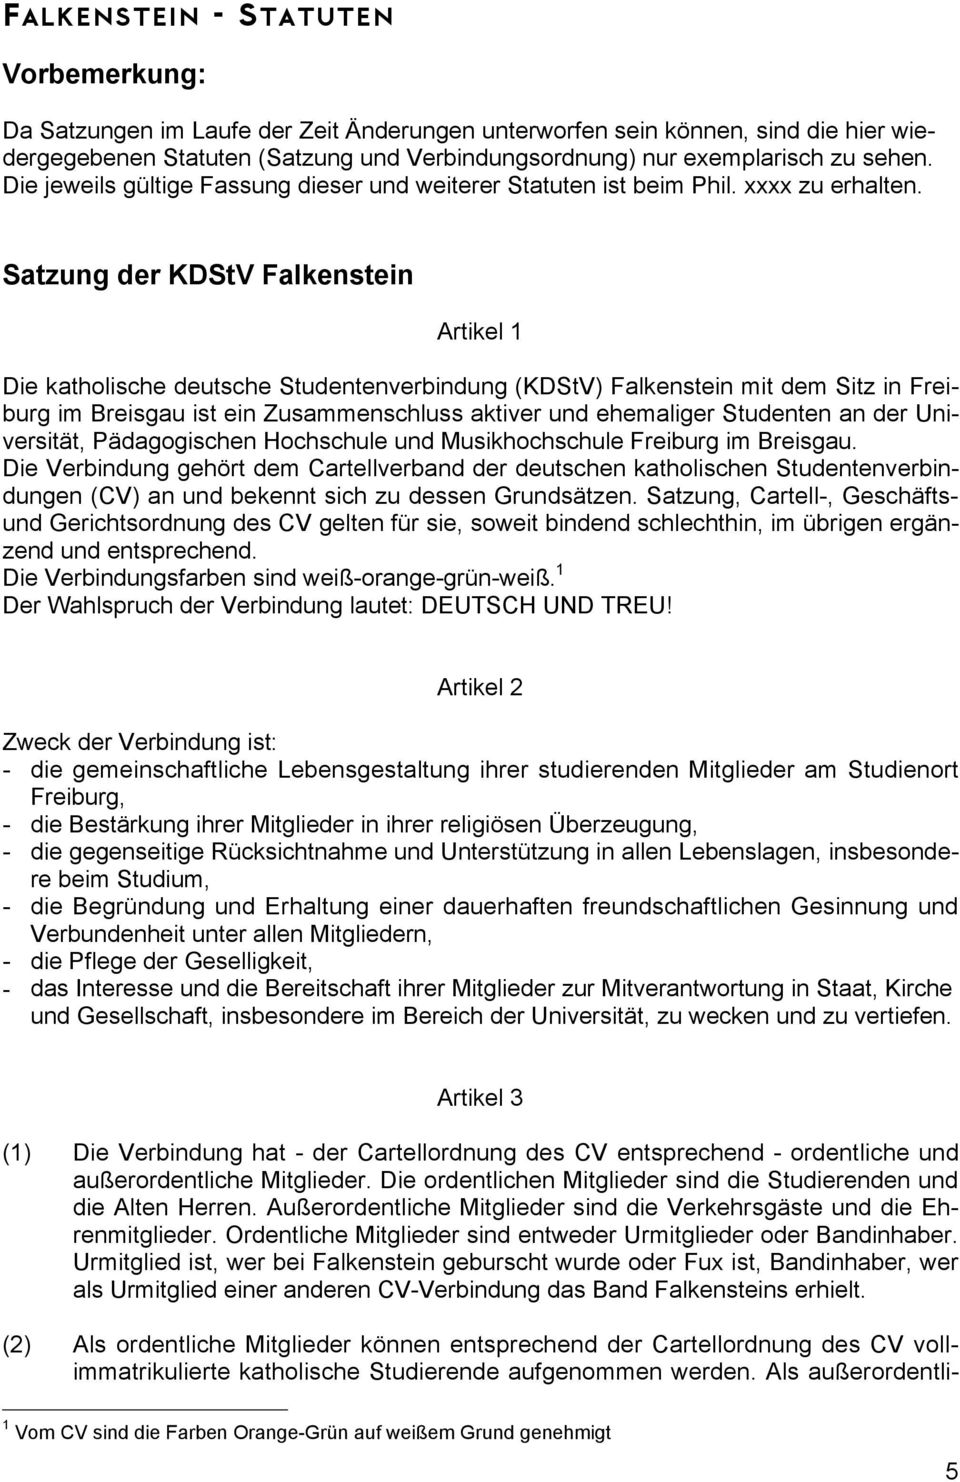 Satzung der KDStV Falkenstein Artikel 1 Die katholische deutsche Studentenverbindung (KDStV) Falkenstein mit dem Sitz in Freiburg im Breisgau ist ein Zusammenschluss aktiver und ehemaliger Studenten